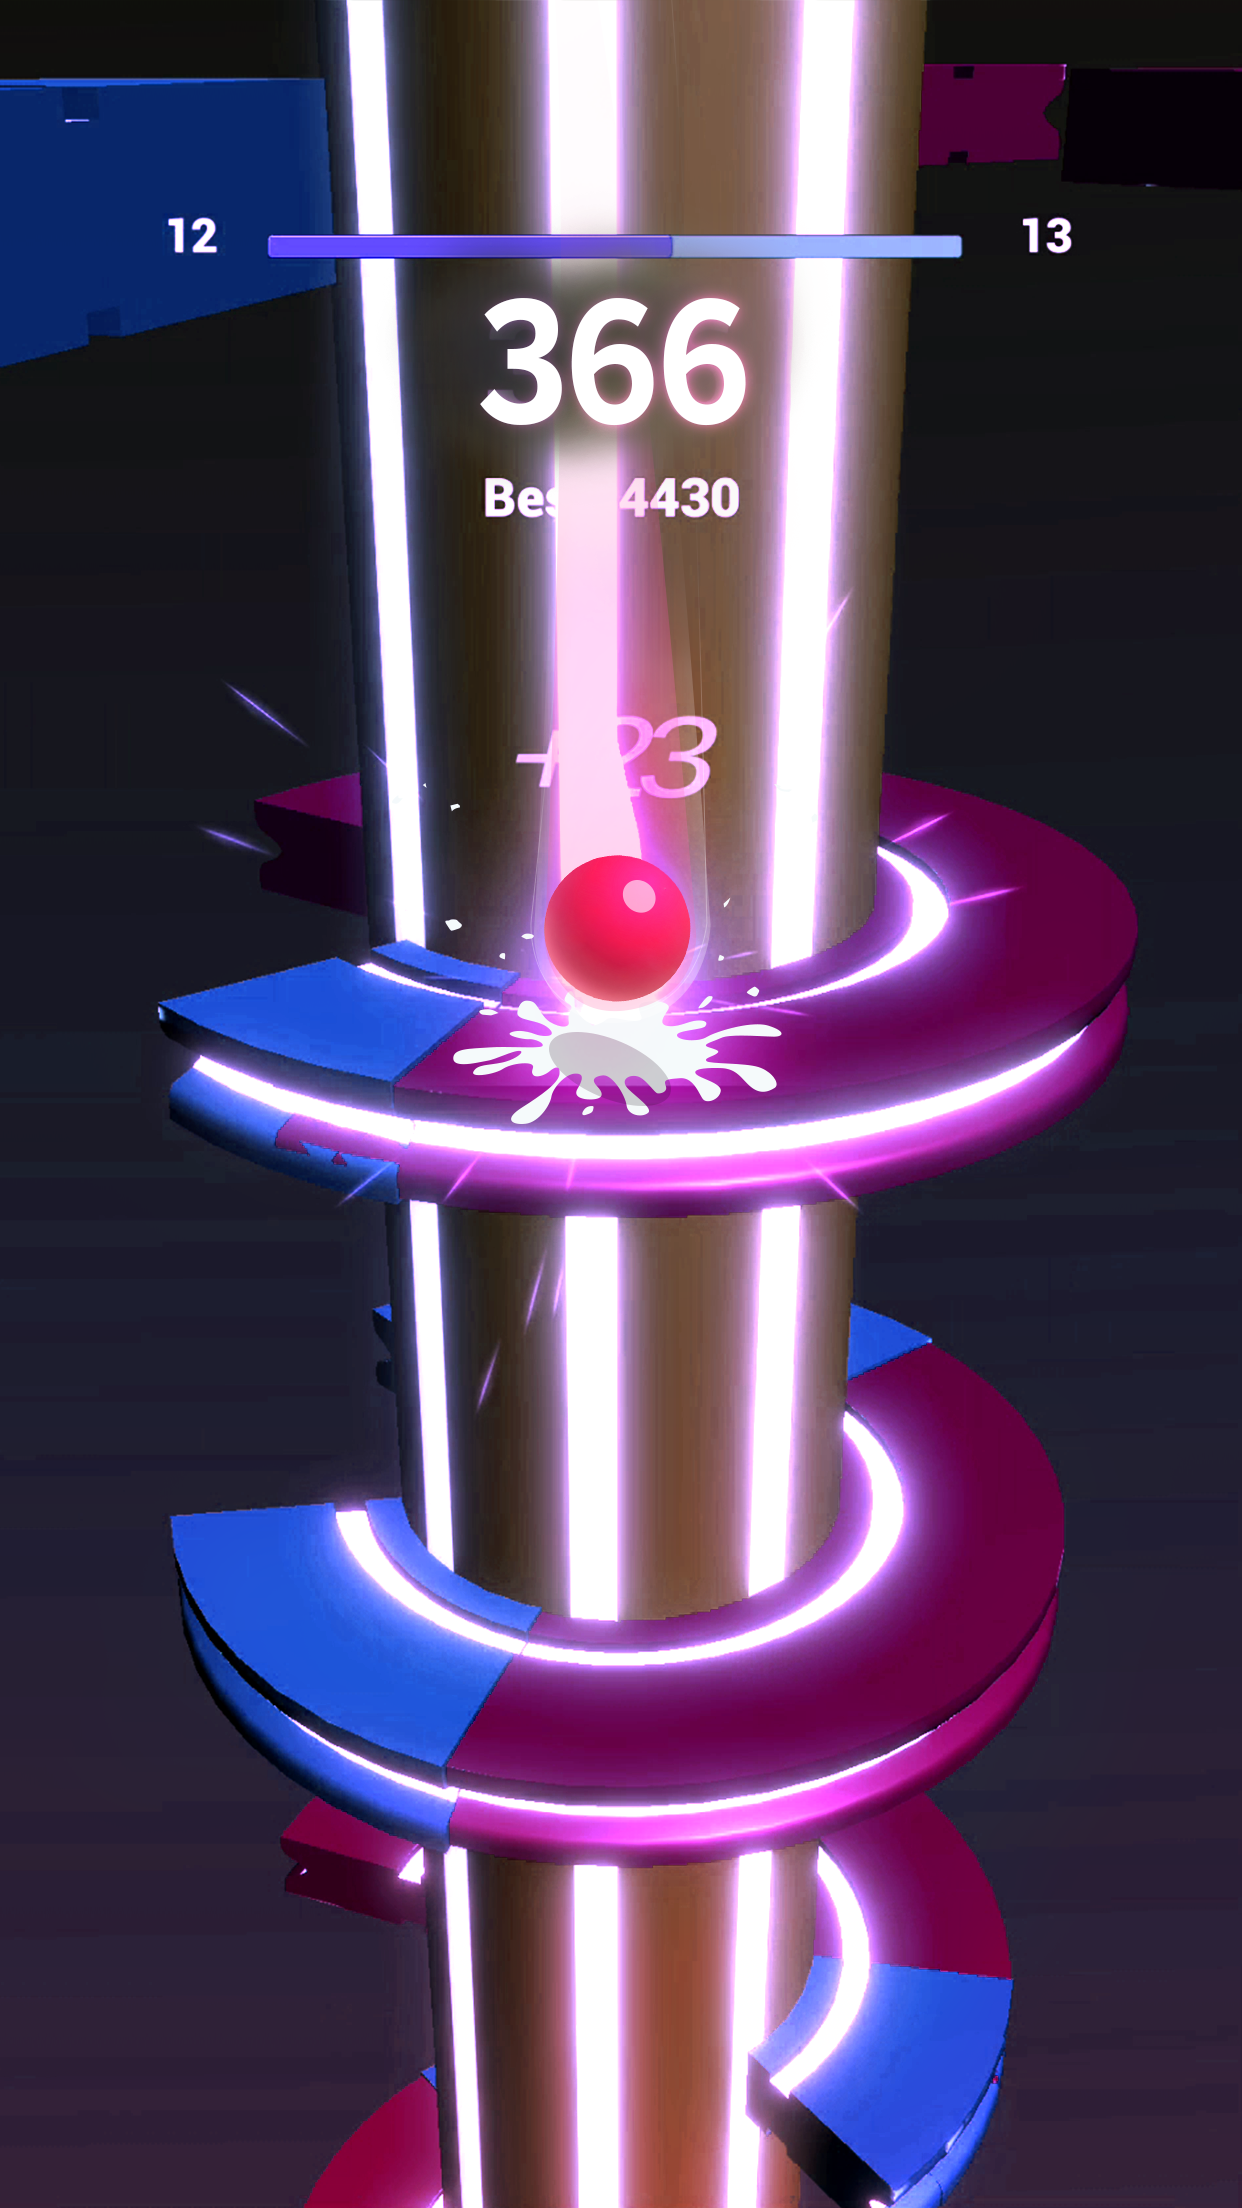 Screenshot 1 of Helix Color Jump 2018 - Gioco di caduta della palla 1.1